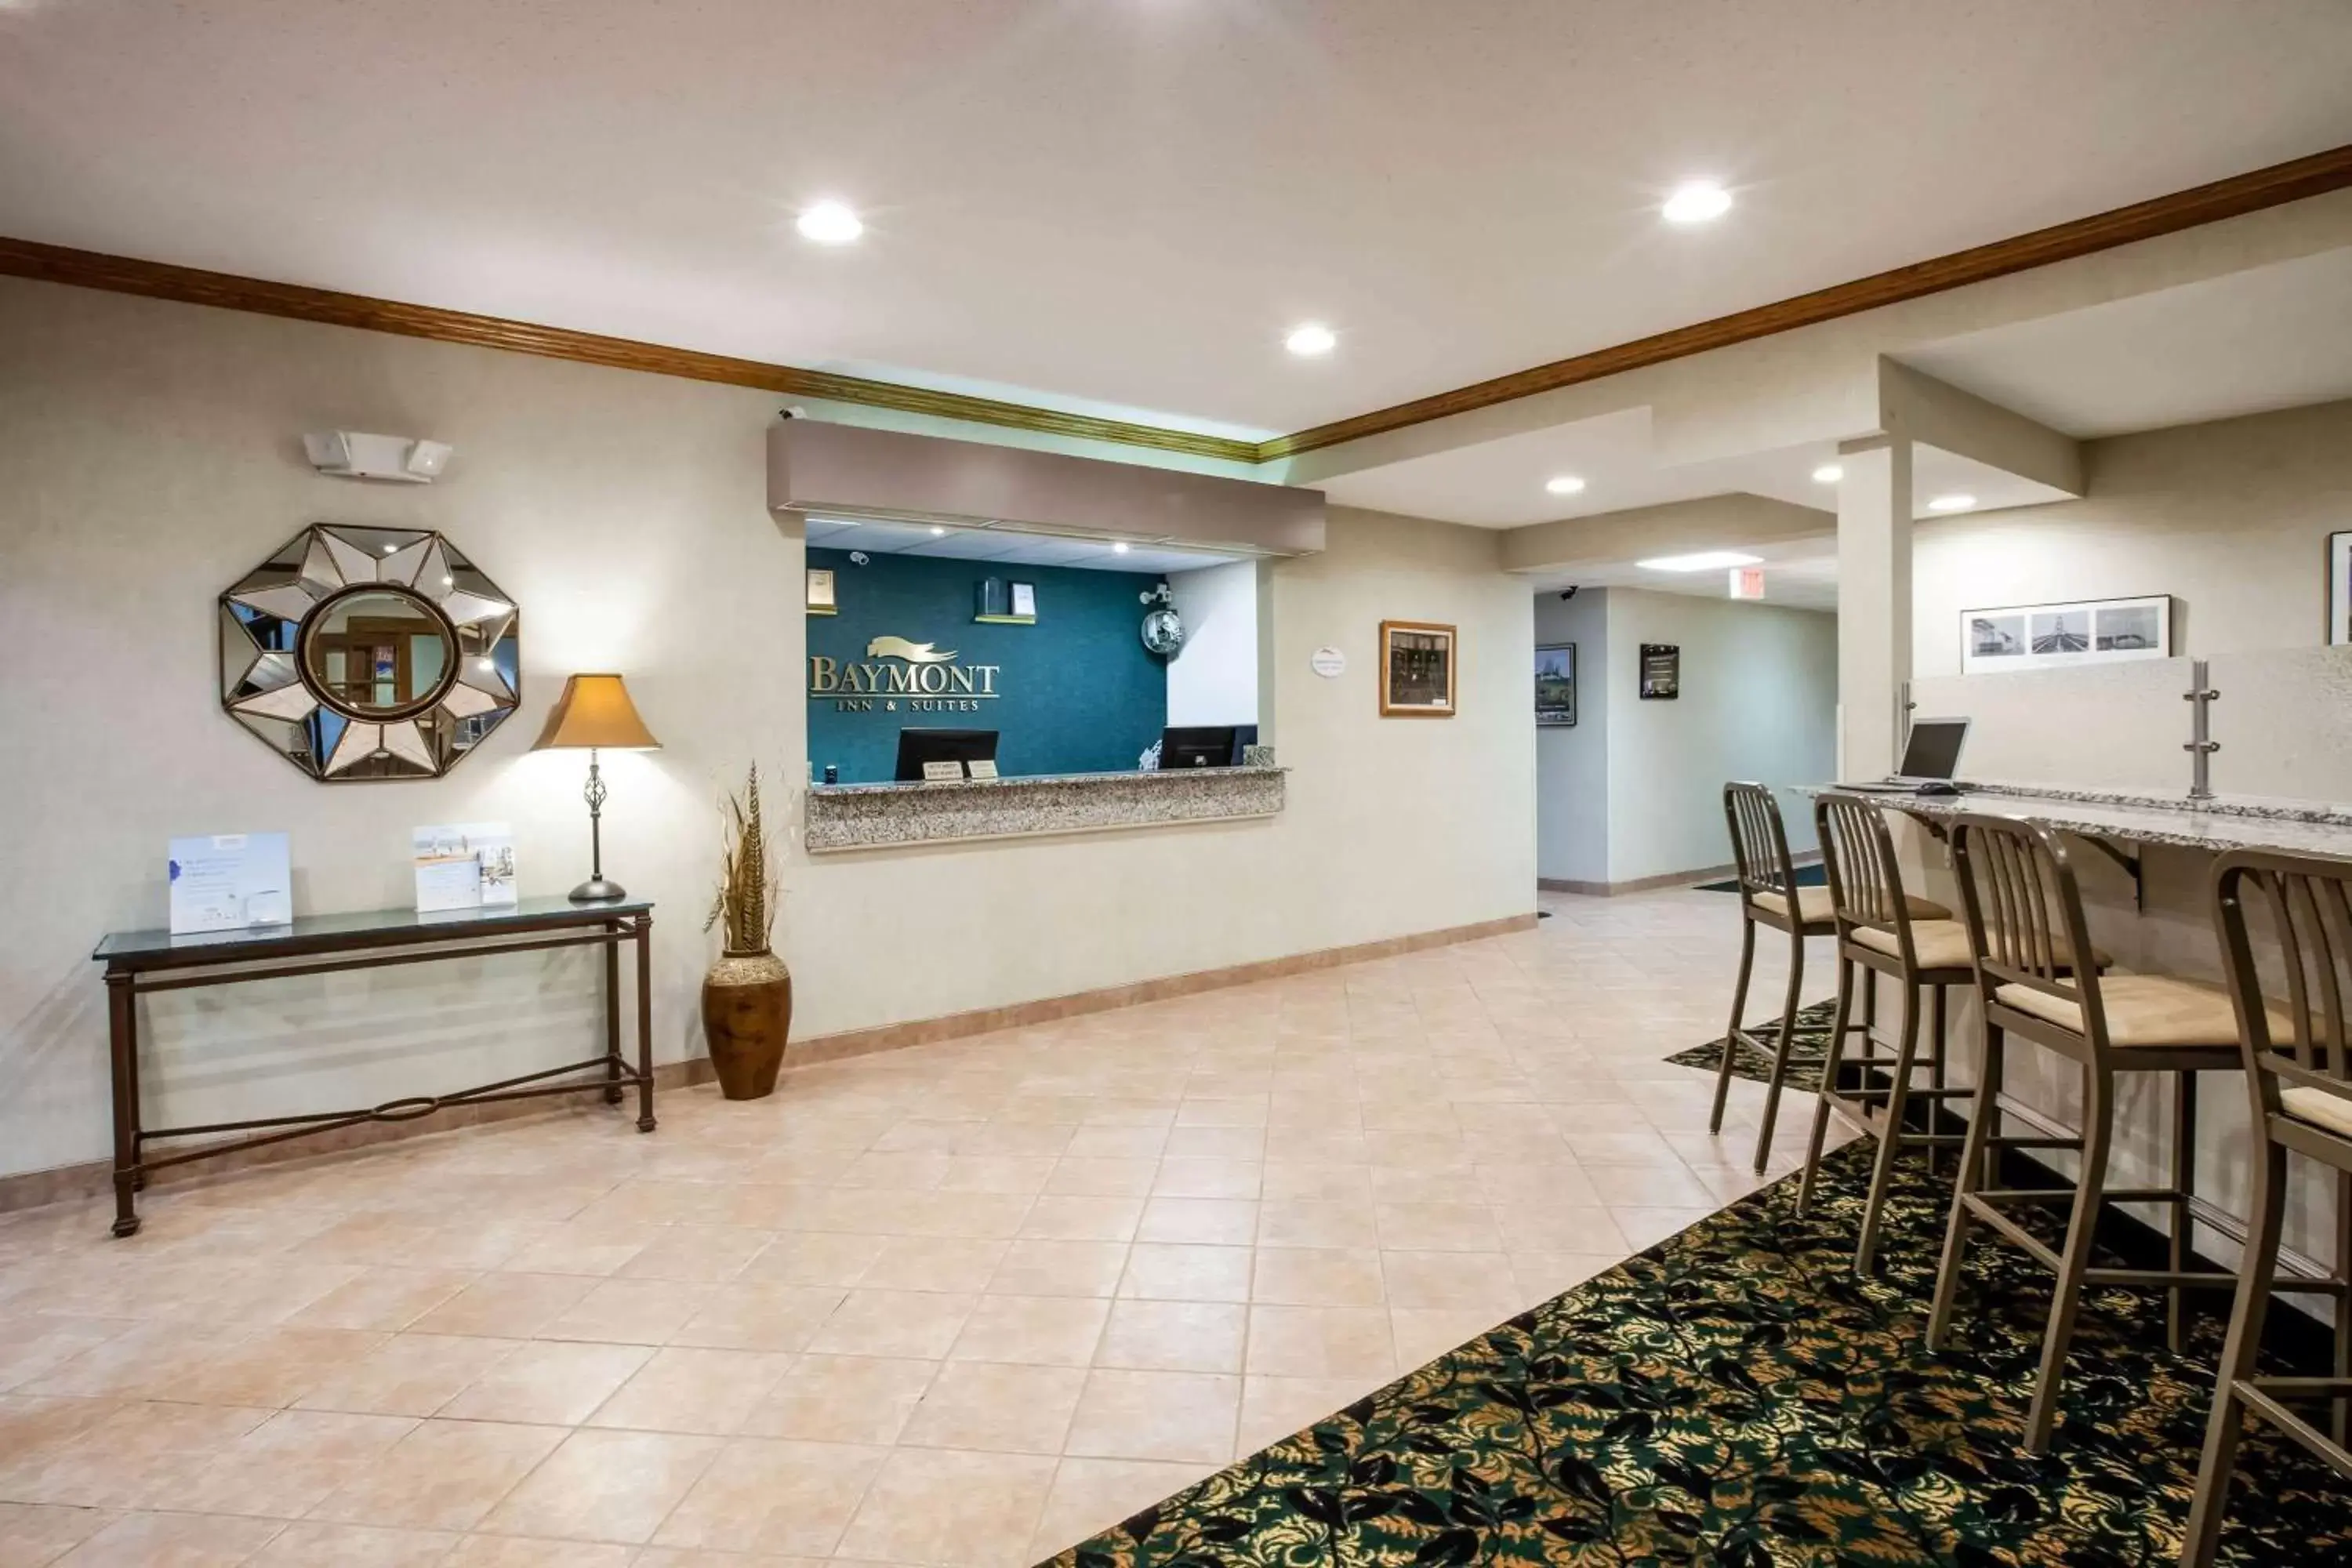 Lobby or reception in Baymont by Wyndham Mackinaw City